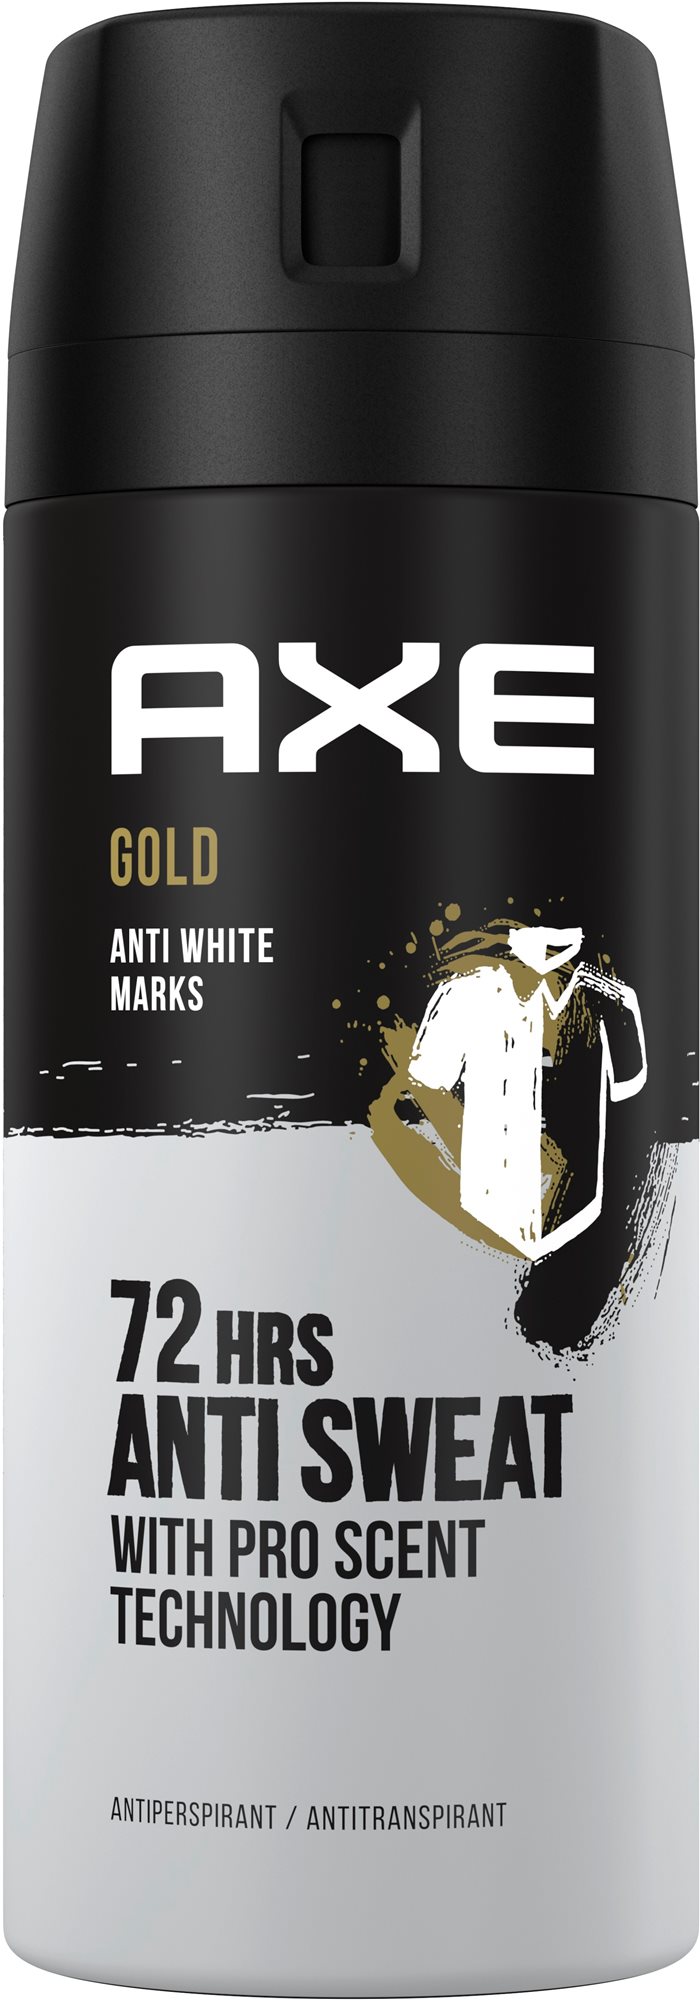 Axe Gold Anti White Marks 72h Anti Sweat